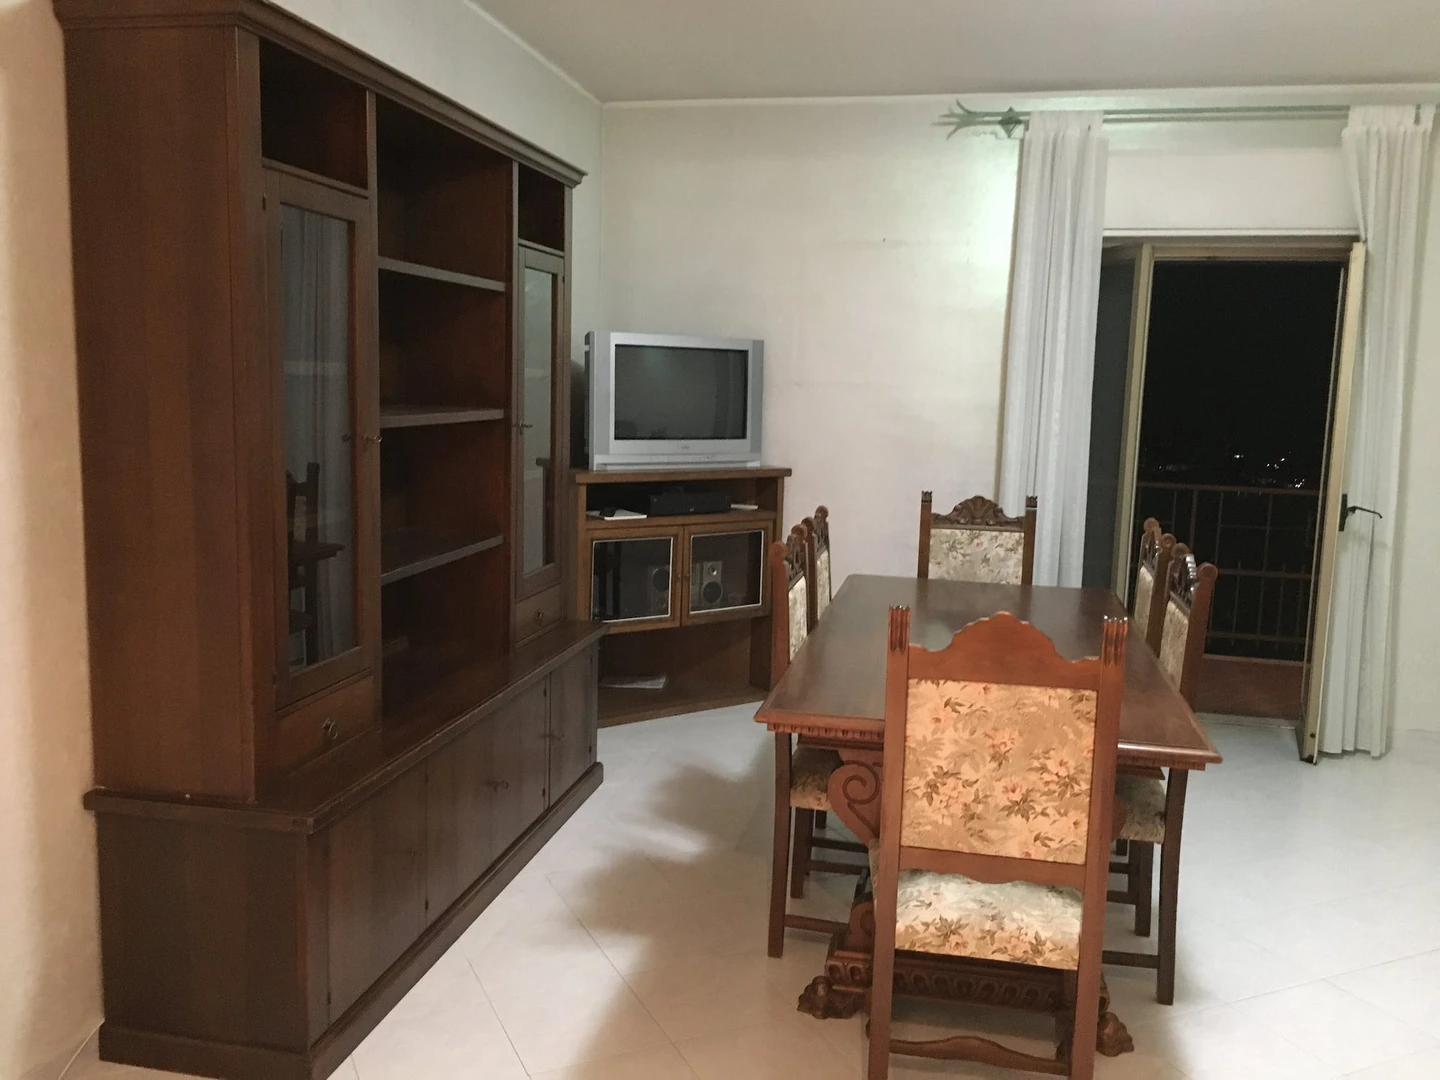 Cheap private room in Campobasso